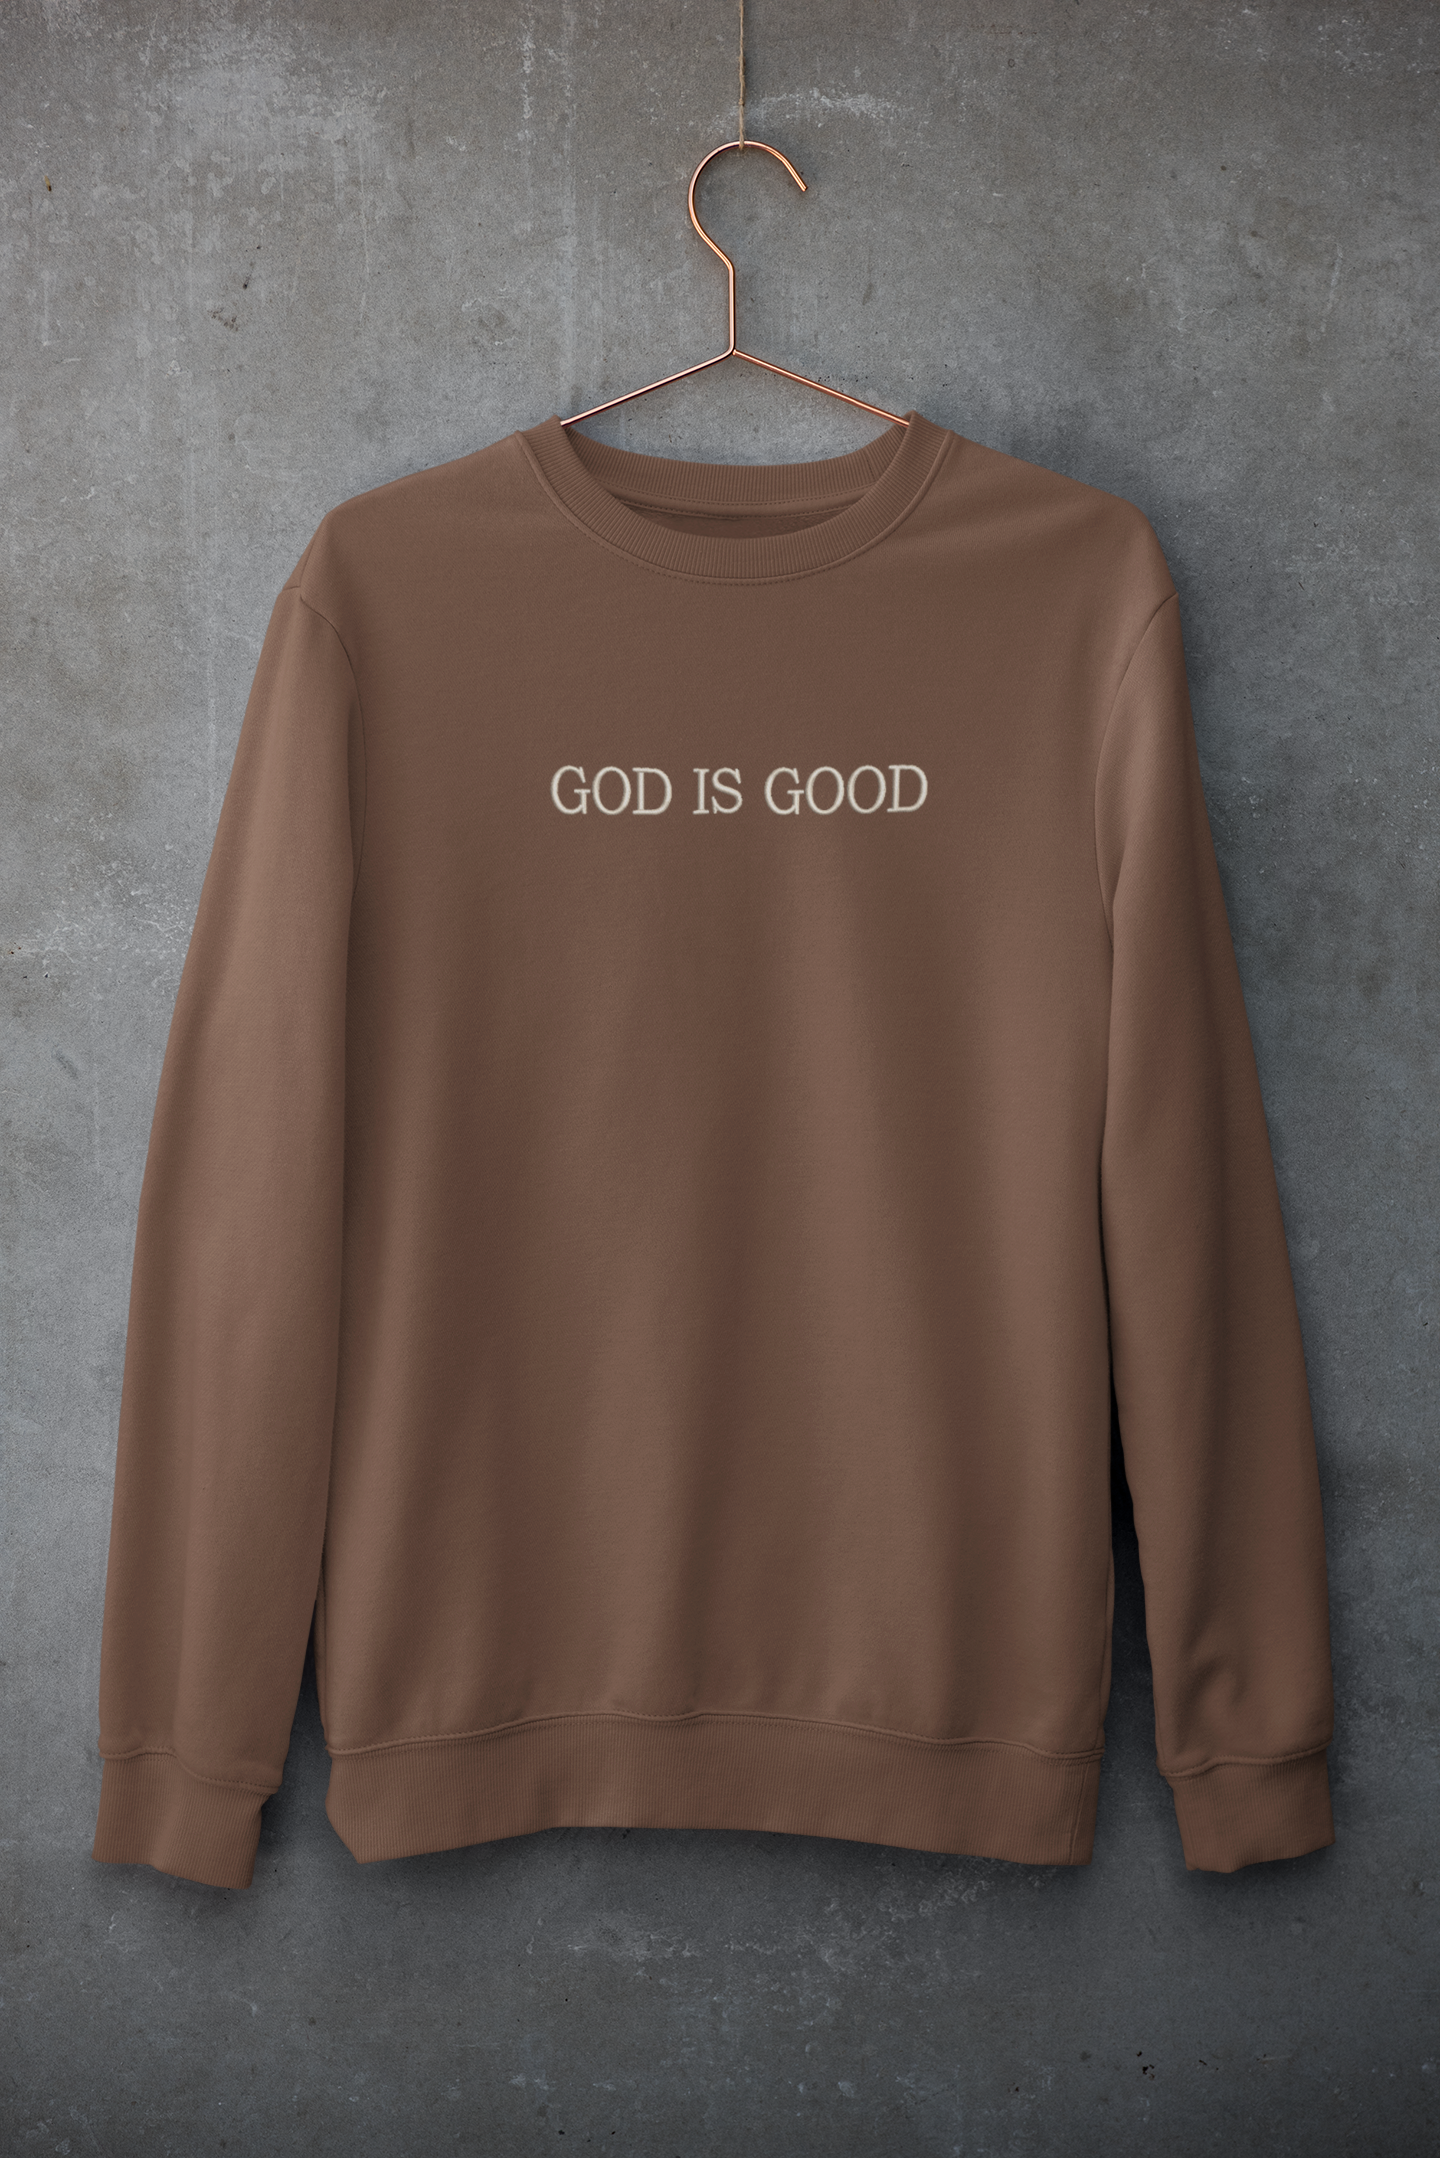 God Is Good Embroidery Unisex Sweatshirt